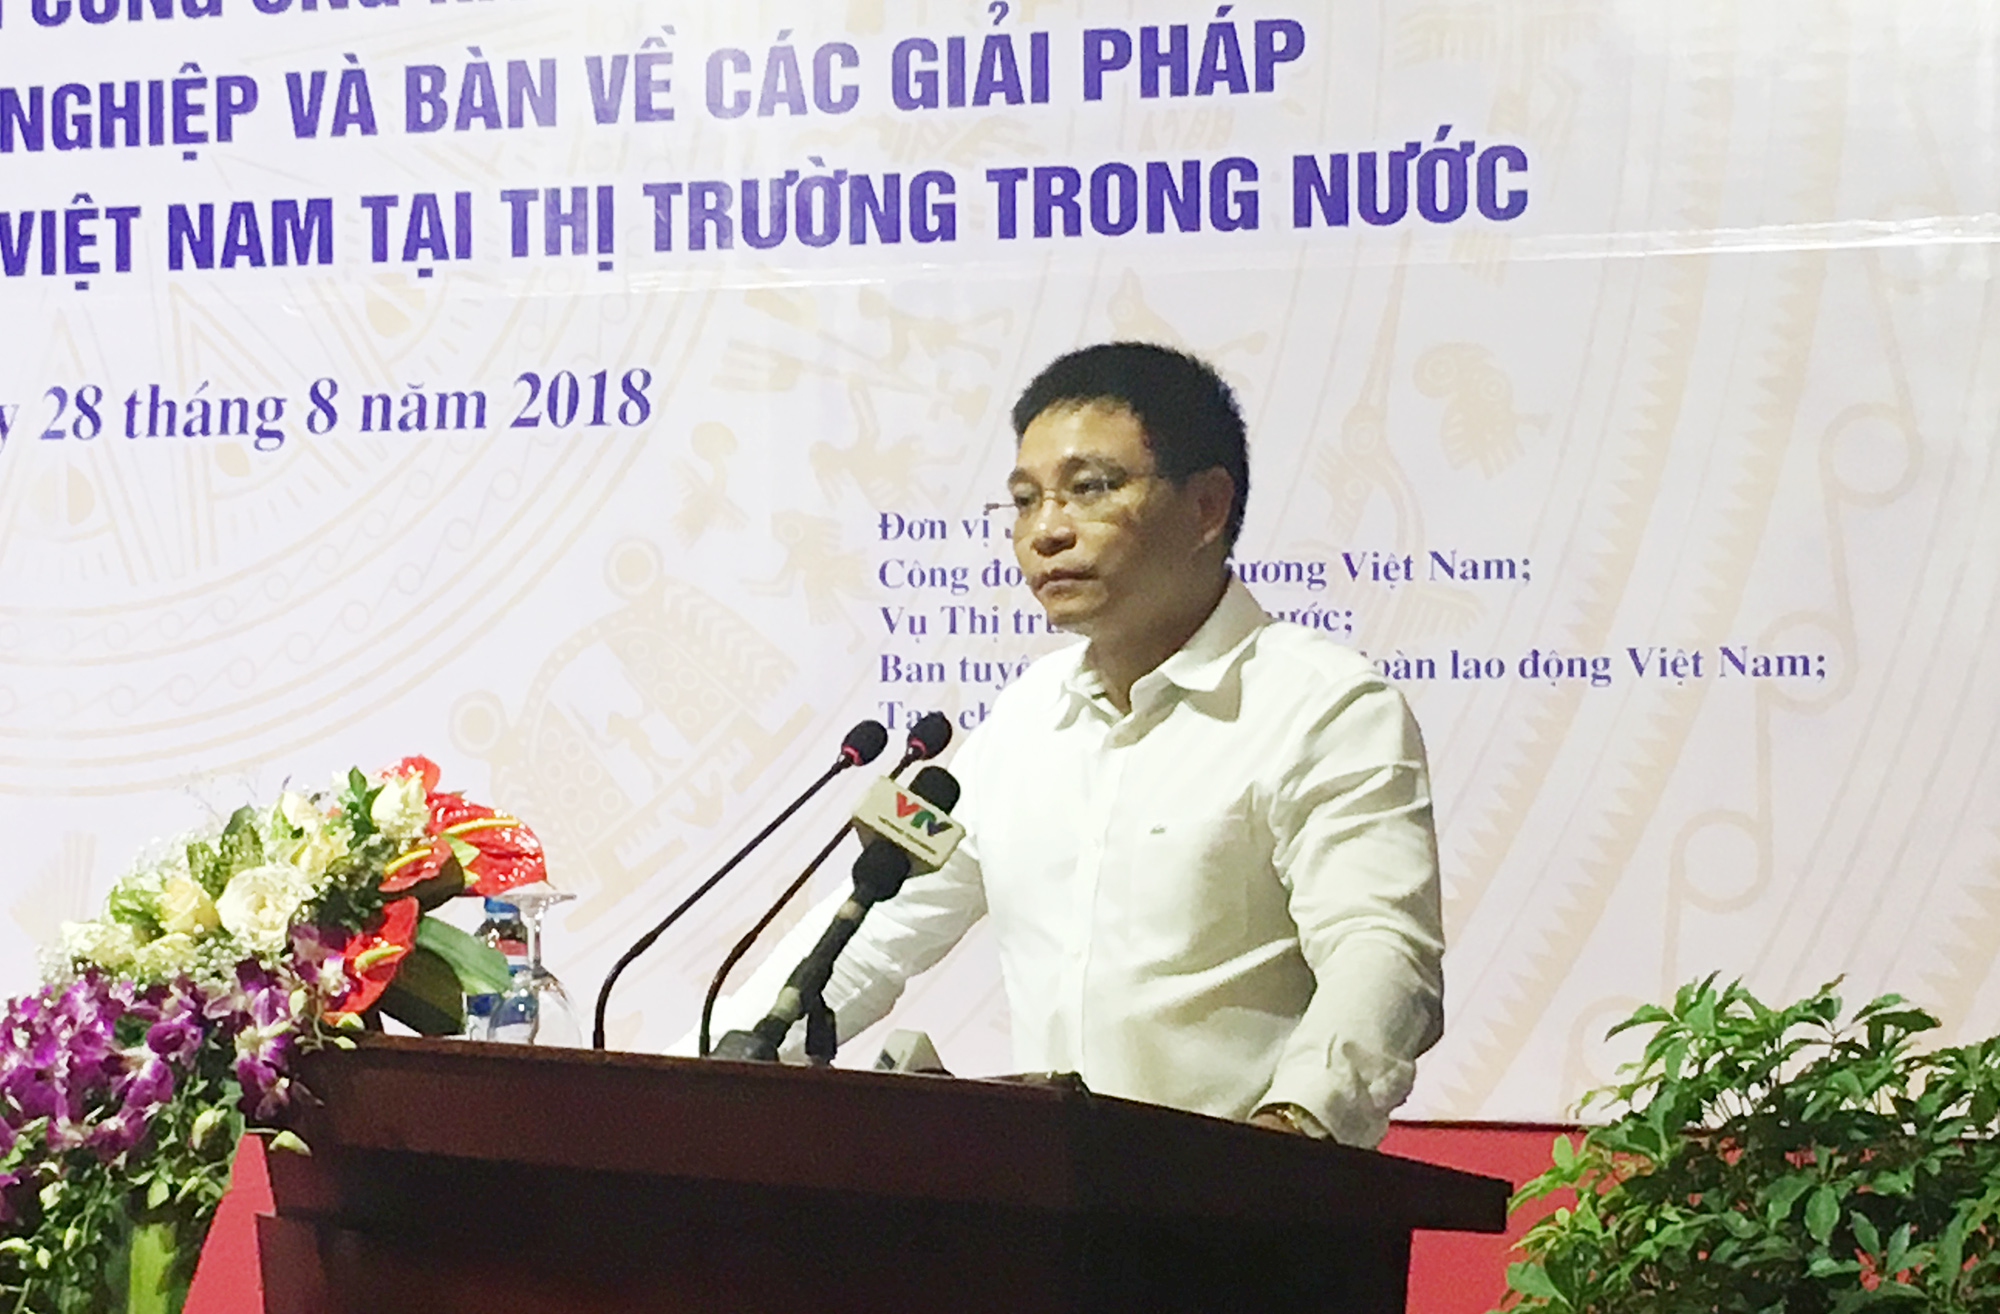 Đồng chí Nguyễn Văn Thắng, Phó Chủ tịch UBND tỉnh phát biểu tại hội nghị